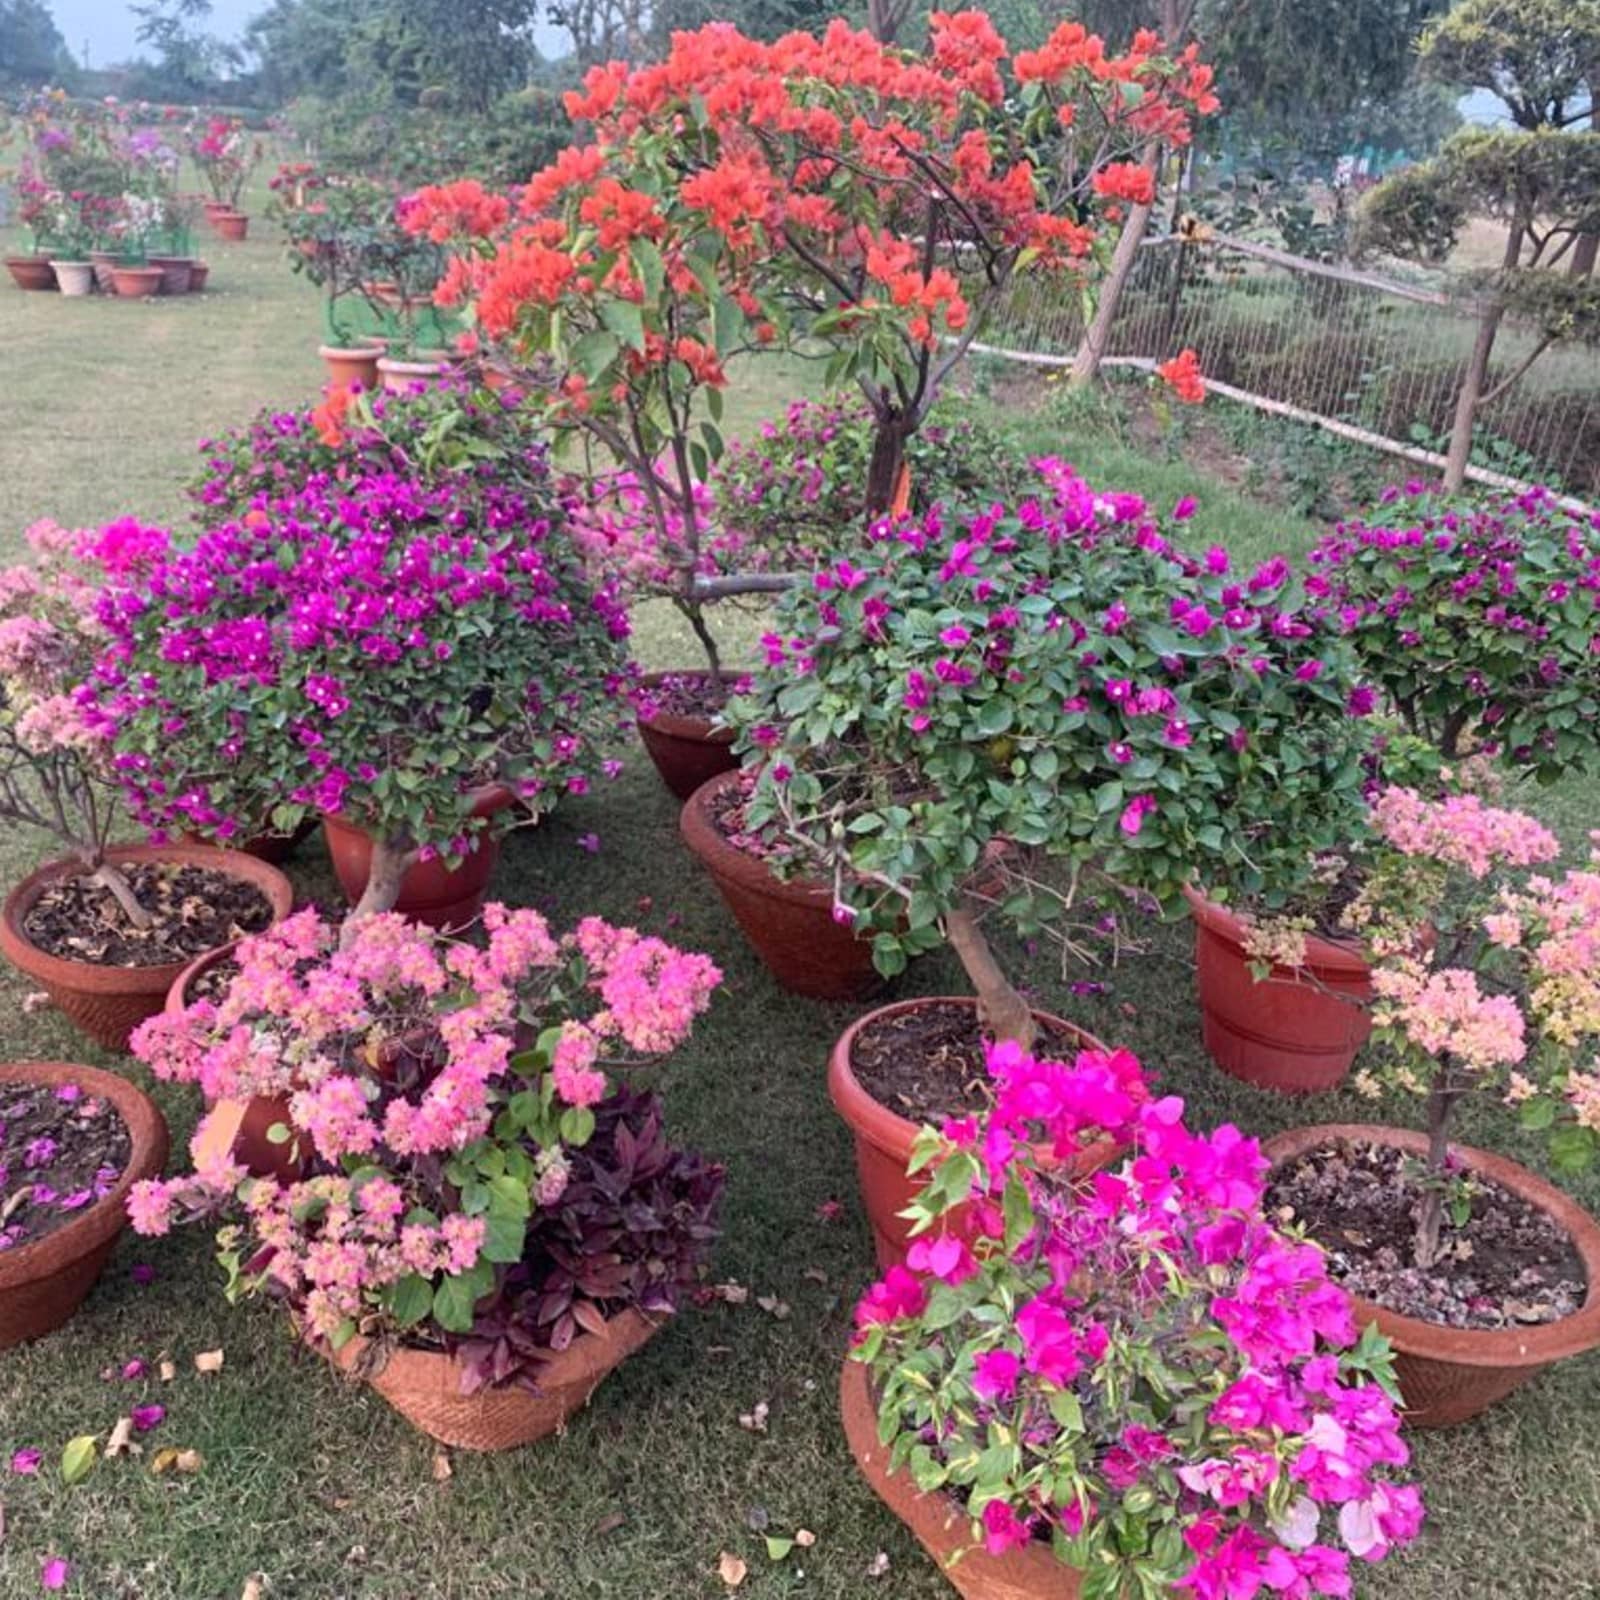  इस दौरान गुलदाउदी के फूल और पौधे भी इस प्रदर्शनी मे रखे गए. डॉ एससी शर्मा ने बोगनवेलिया के इतिहास से परिचय कराते हुए बताया कि यह पौधा लगभग 300 वर्ष पूर्व ब्राजील से भारत लाया गया था.